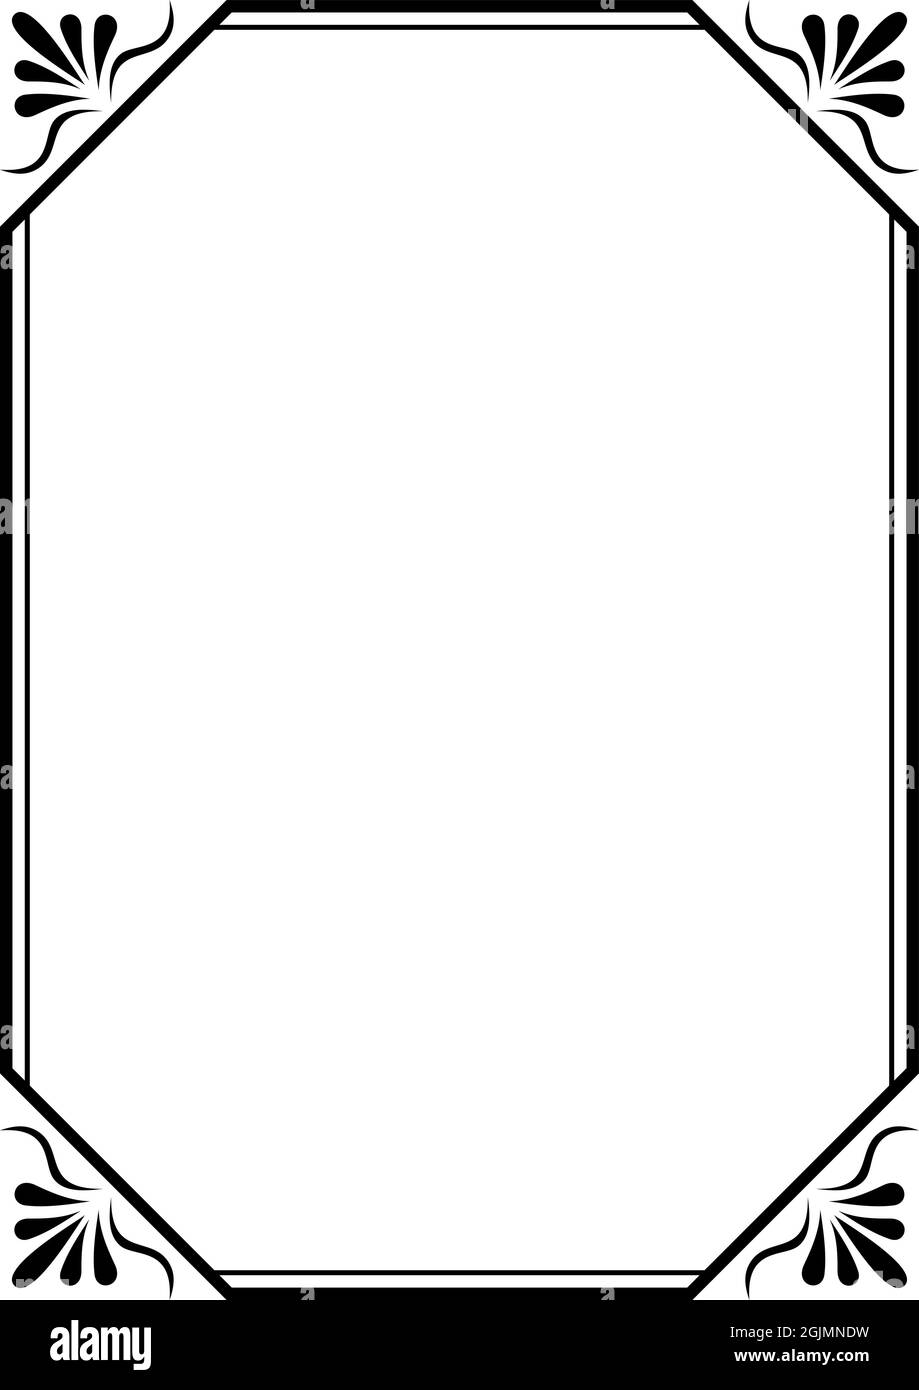 Cornice antica con ornato su isolato sfondo bianco. Bordo per lettera, foto  o sfondo, certificato, posta e posta Immagine e Vettoriale - Alamy